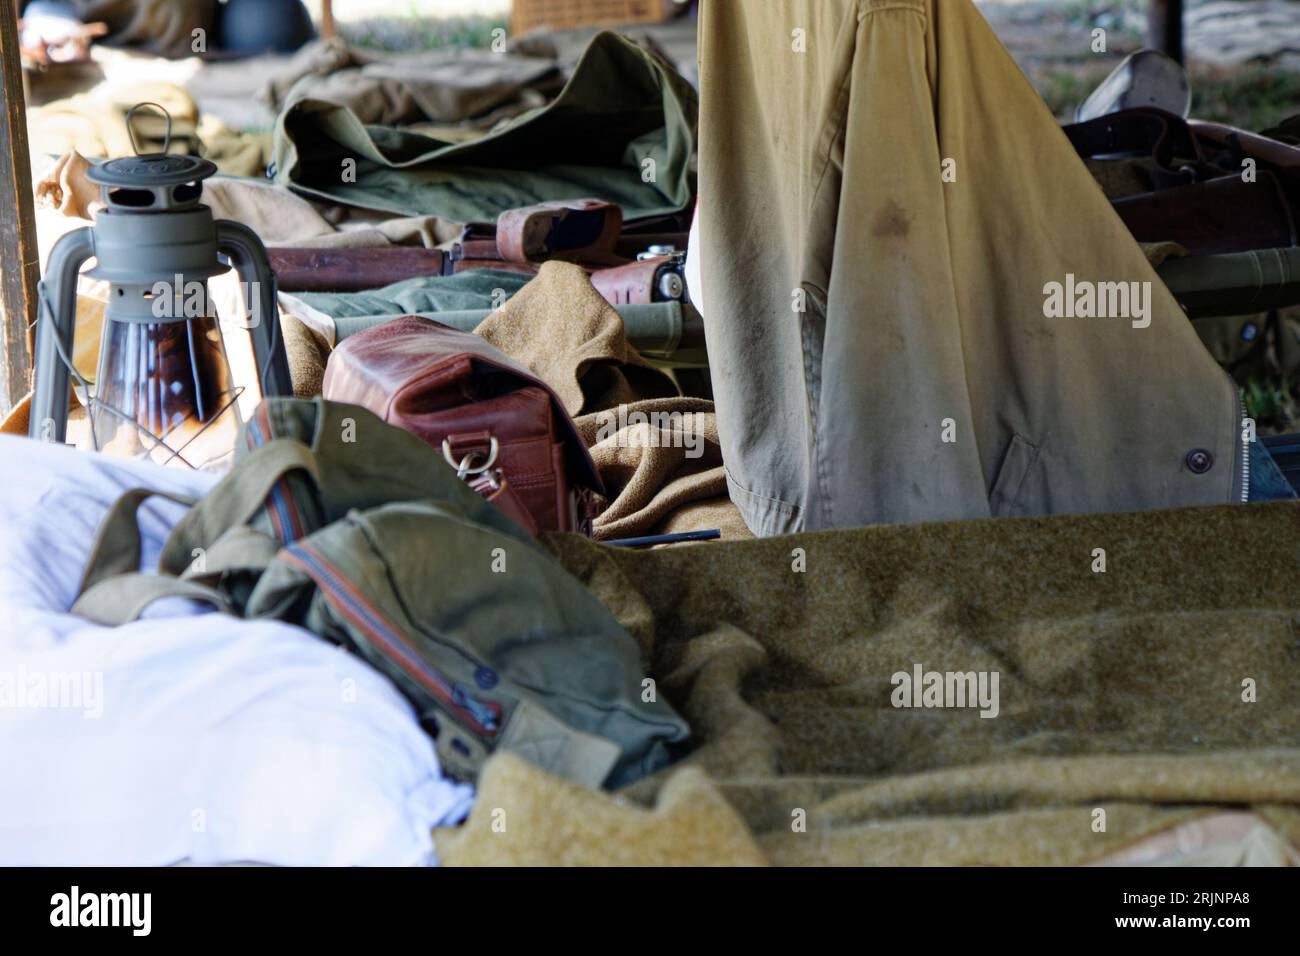 Une tente militaire camouflée installée à l'extérieur, avec des vêtements vert armée Banque D'Images